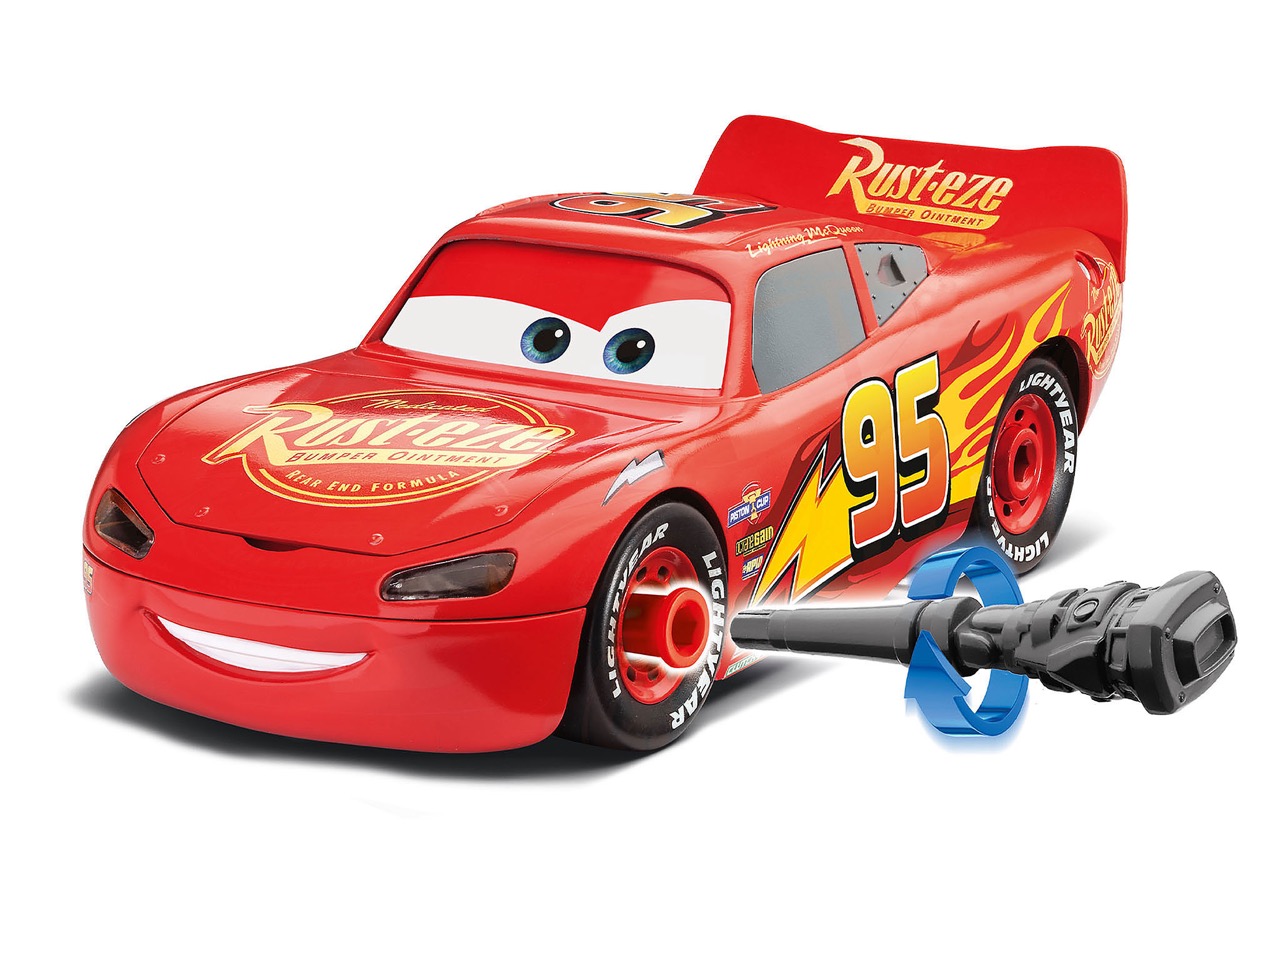 Revell 00920 Lightning Mcqueen Disney Cars Kids Model Kit Construction Toy